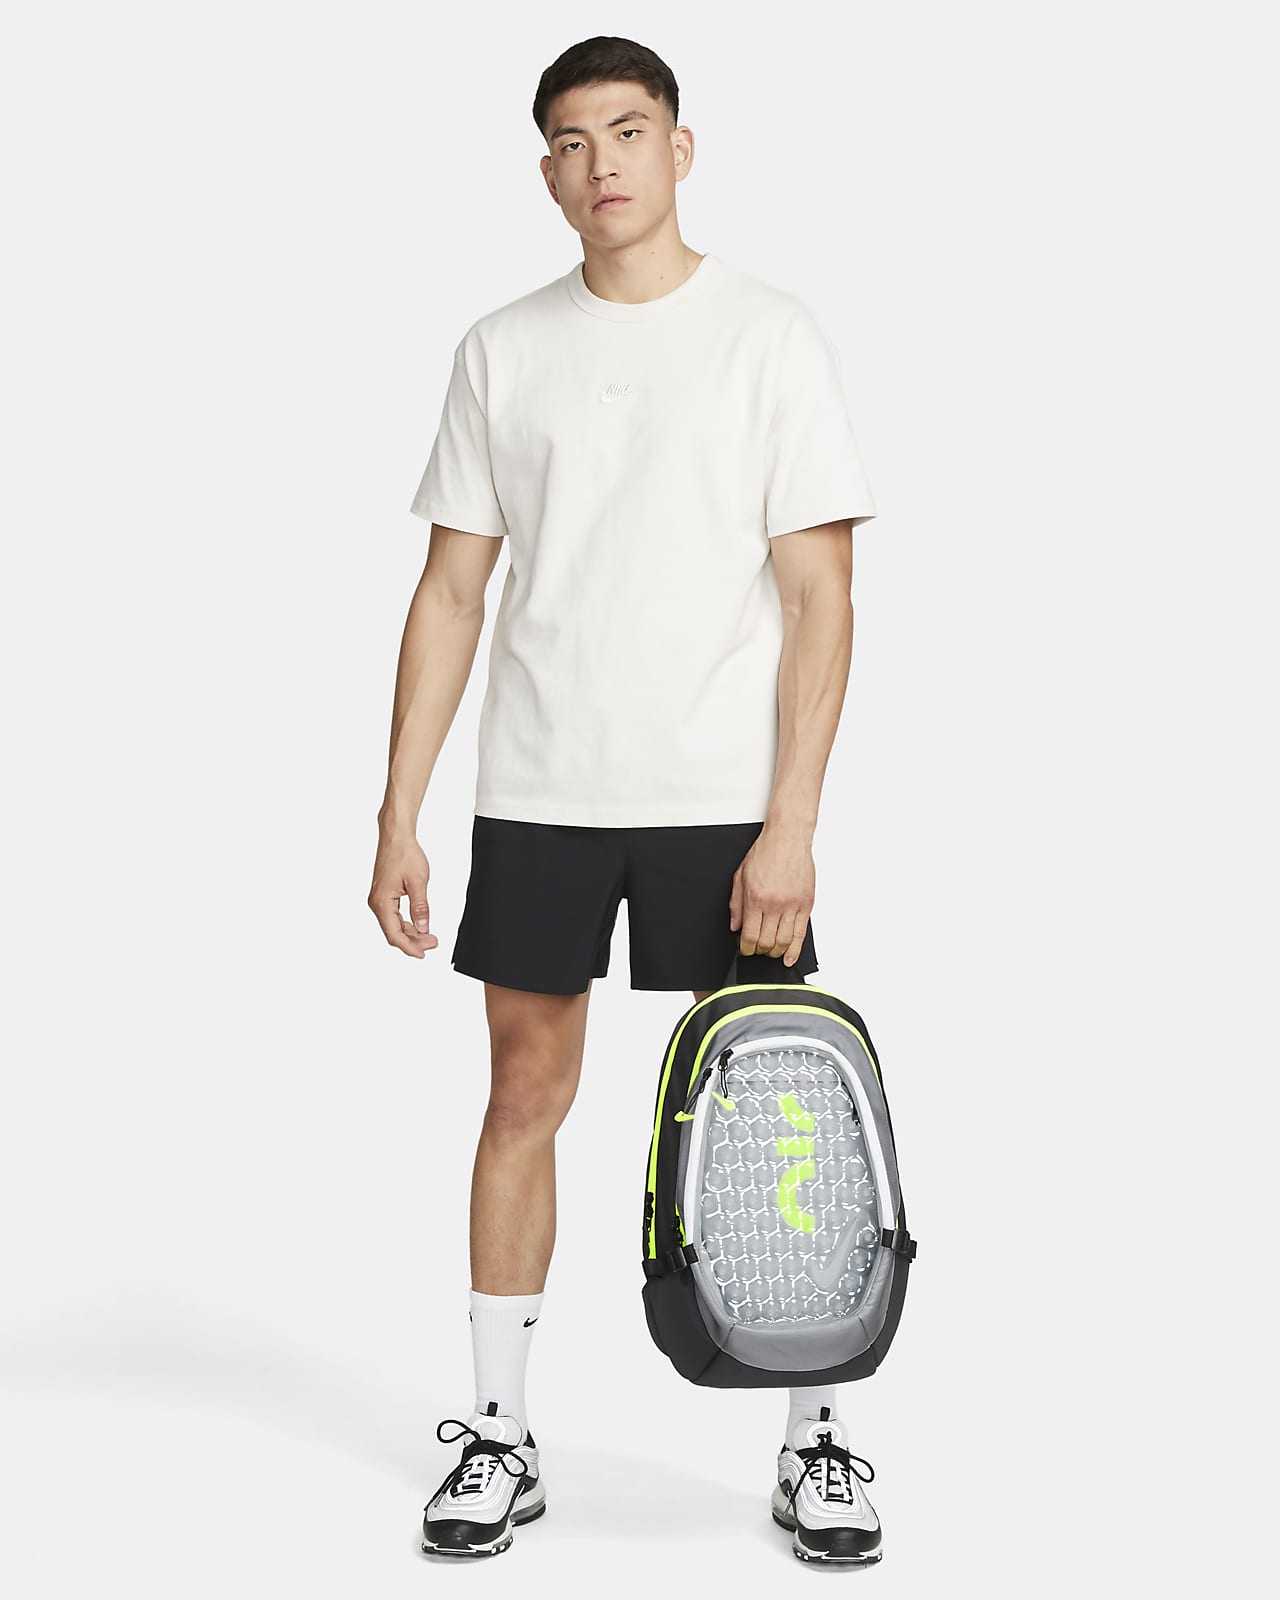 theorie Voorrecht Oraal Nike Air Max Backpack (17L). Nike.com